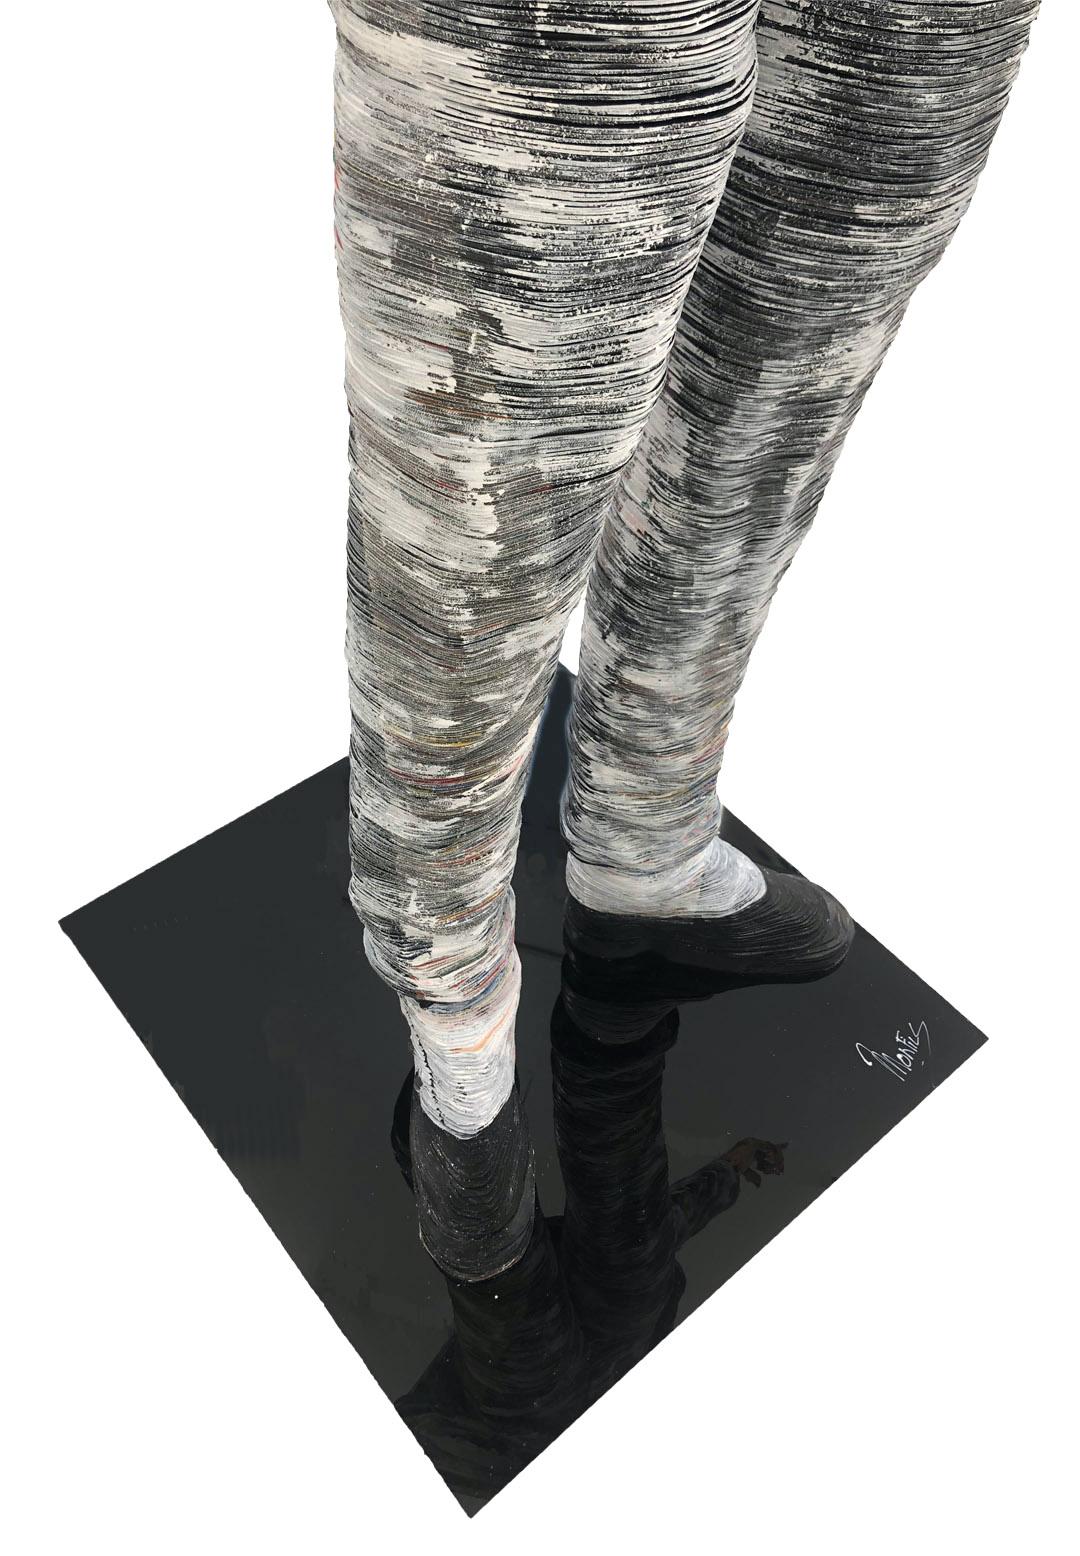 Michael Jackson, Vinyl Records - Contemporary Sculpture by Georges Monfils